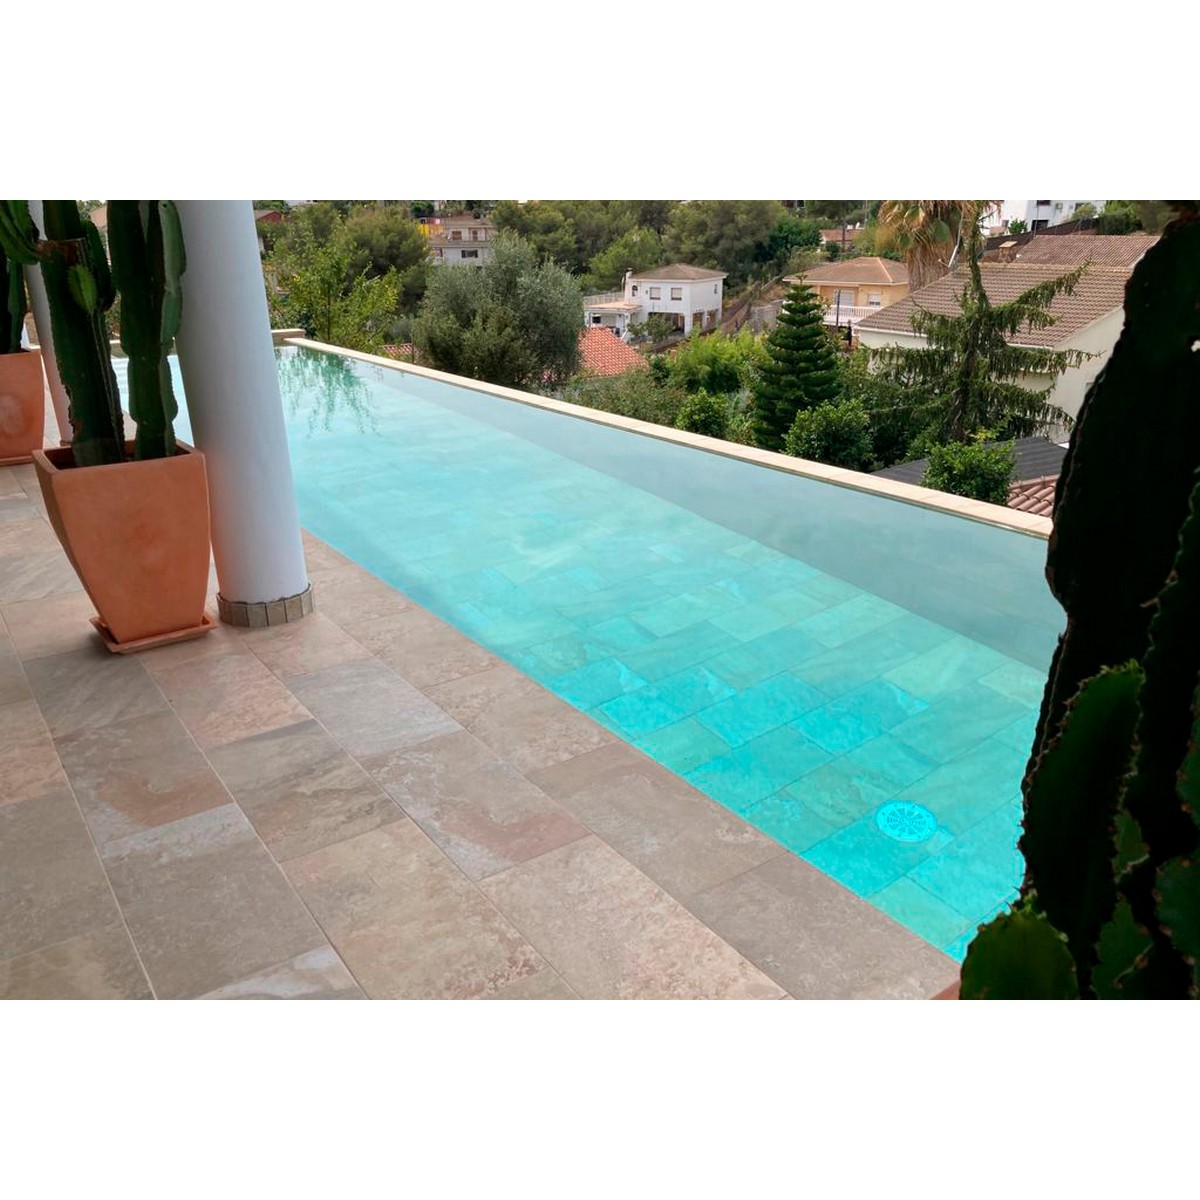 Pietro Golden - Exterior e interior de piscina